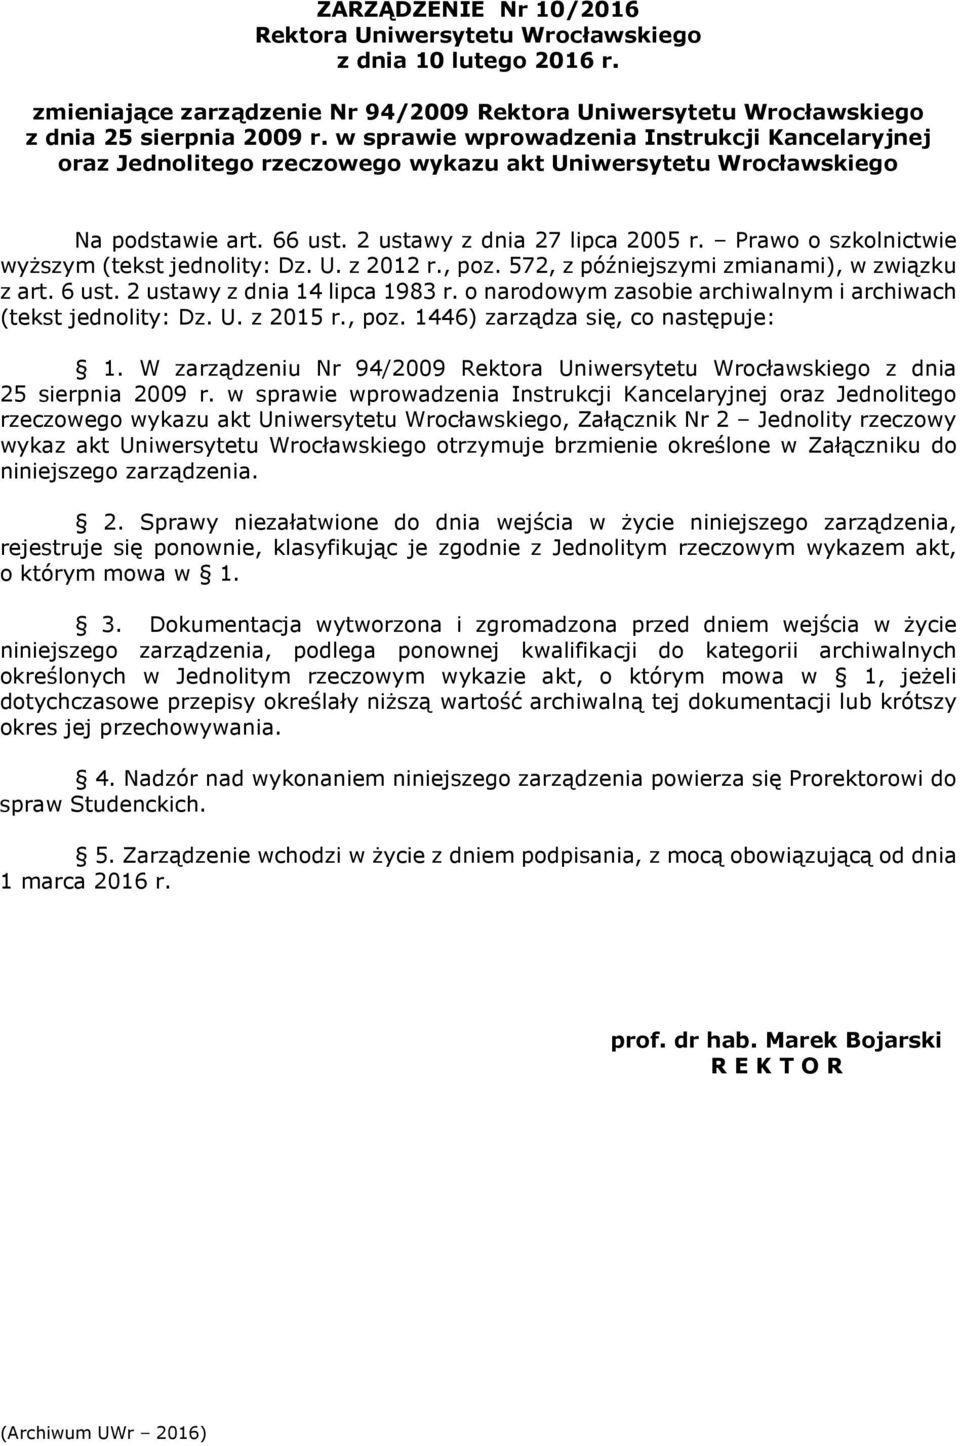 Prawo o szkolnictwie wyższym (tekst jednolity: Dz. U. z 2012 r., poz. 572, z późniejszymi zmianami), w związku z art. 6 ust. 2 ustawy z dnia 14 lipca 1983 r.